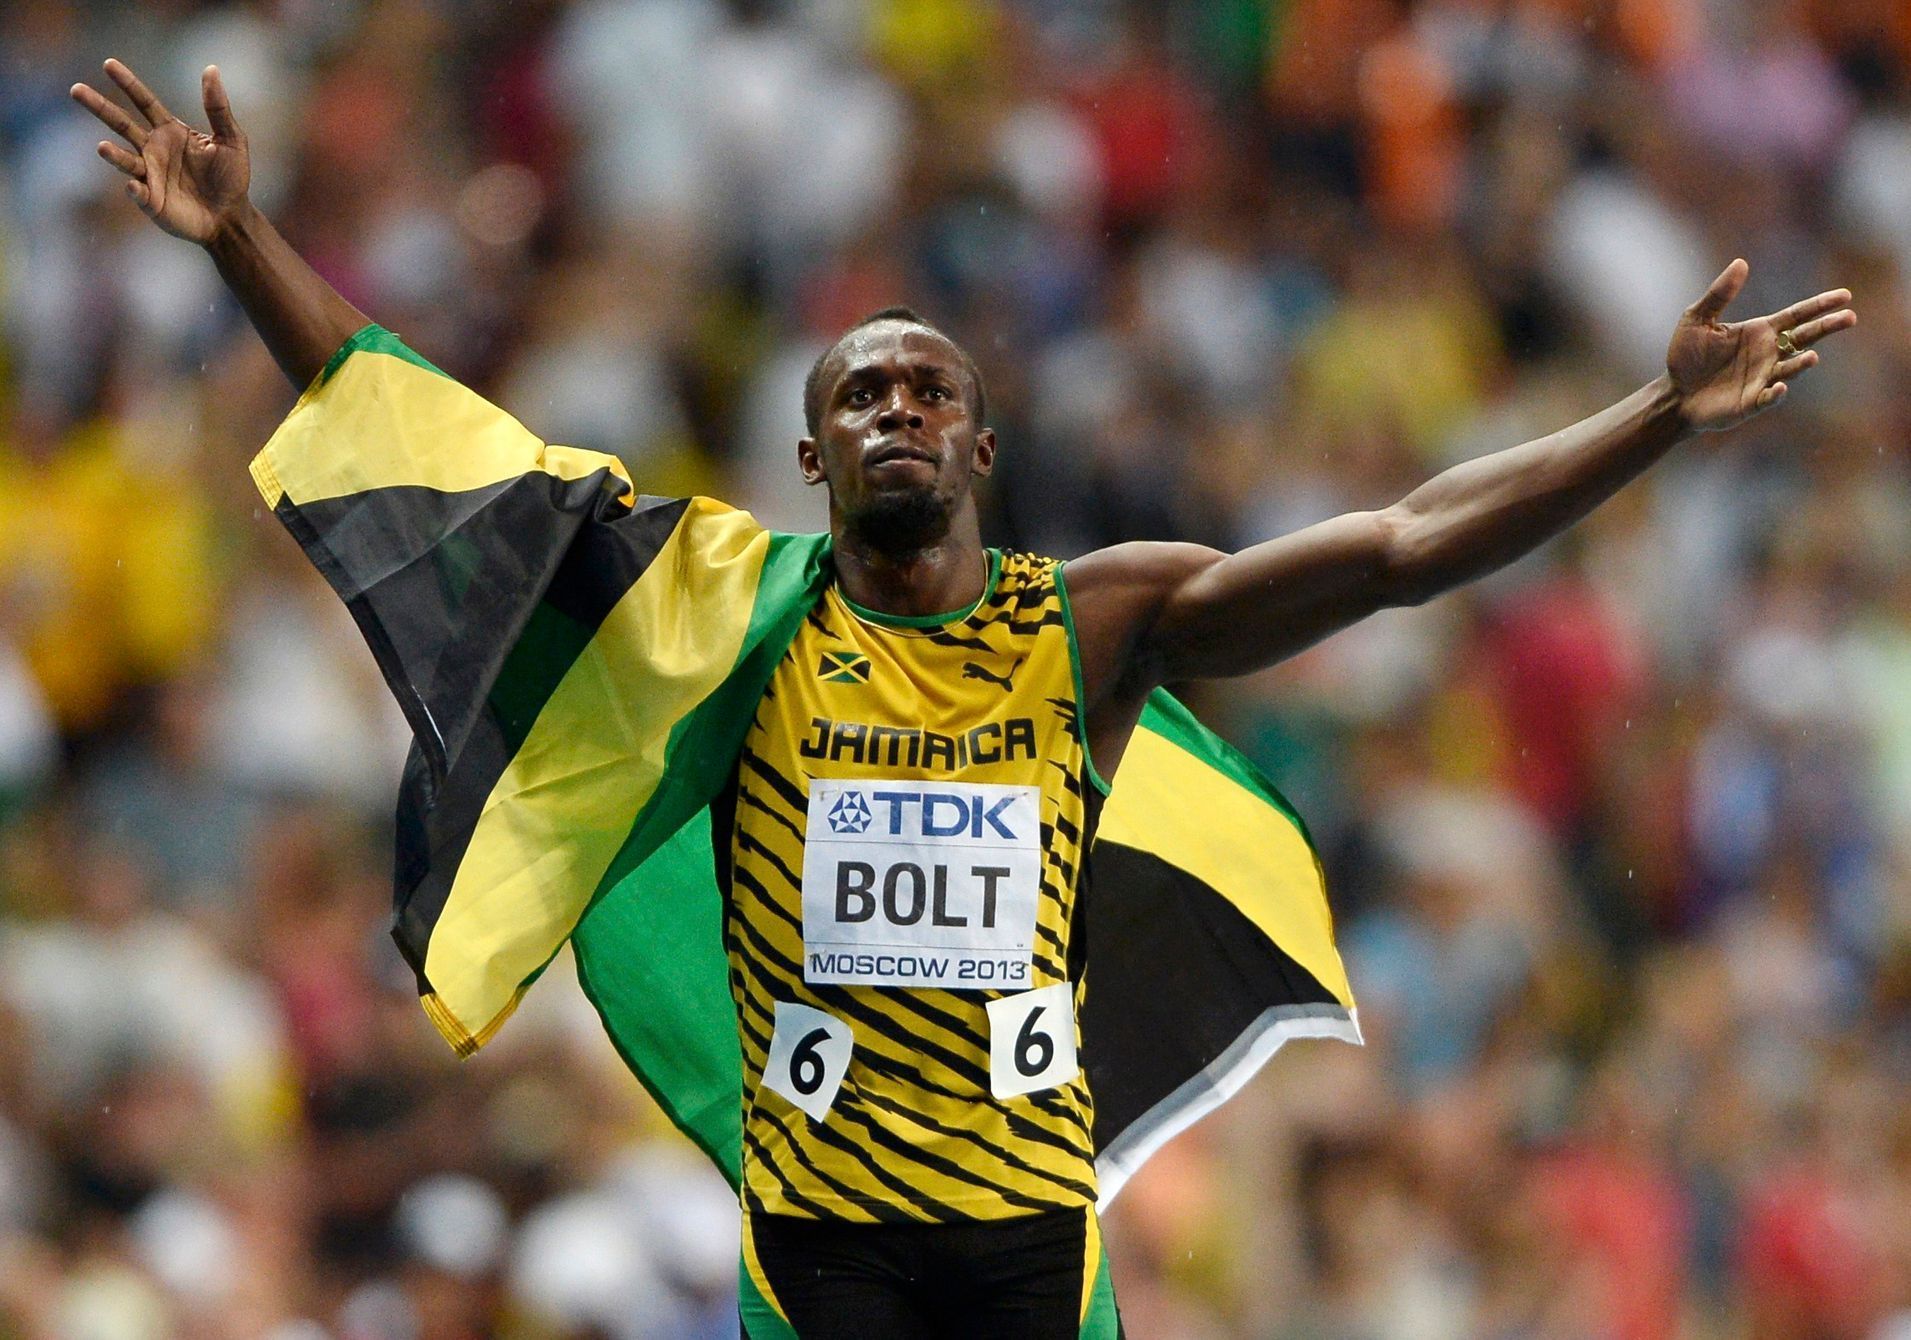 MS v atletice 2013, 100 m - finále: Usain Bolt